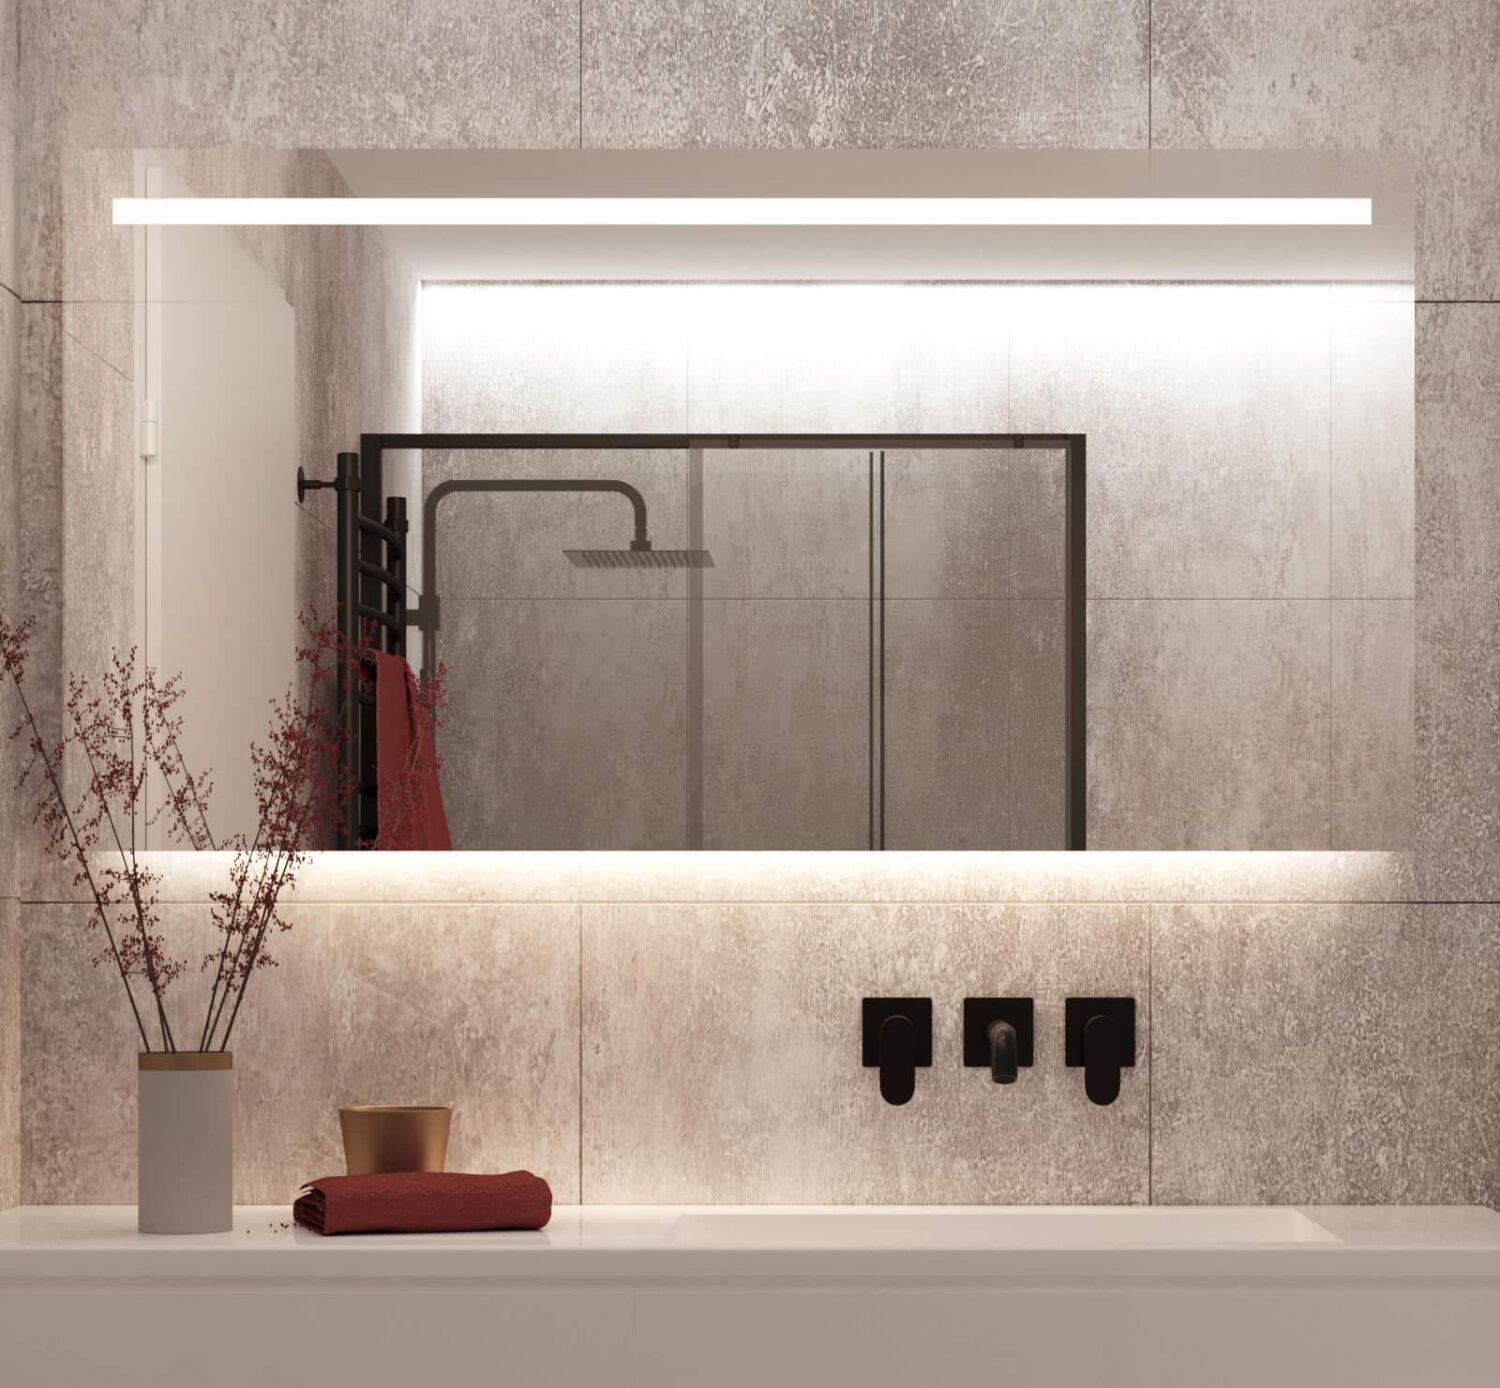 Badkamerspiegel met LED verlichting, verwarming, en dimfunctie 140x70 - Designspiegels